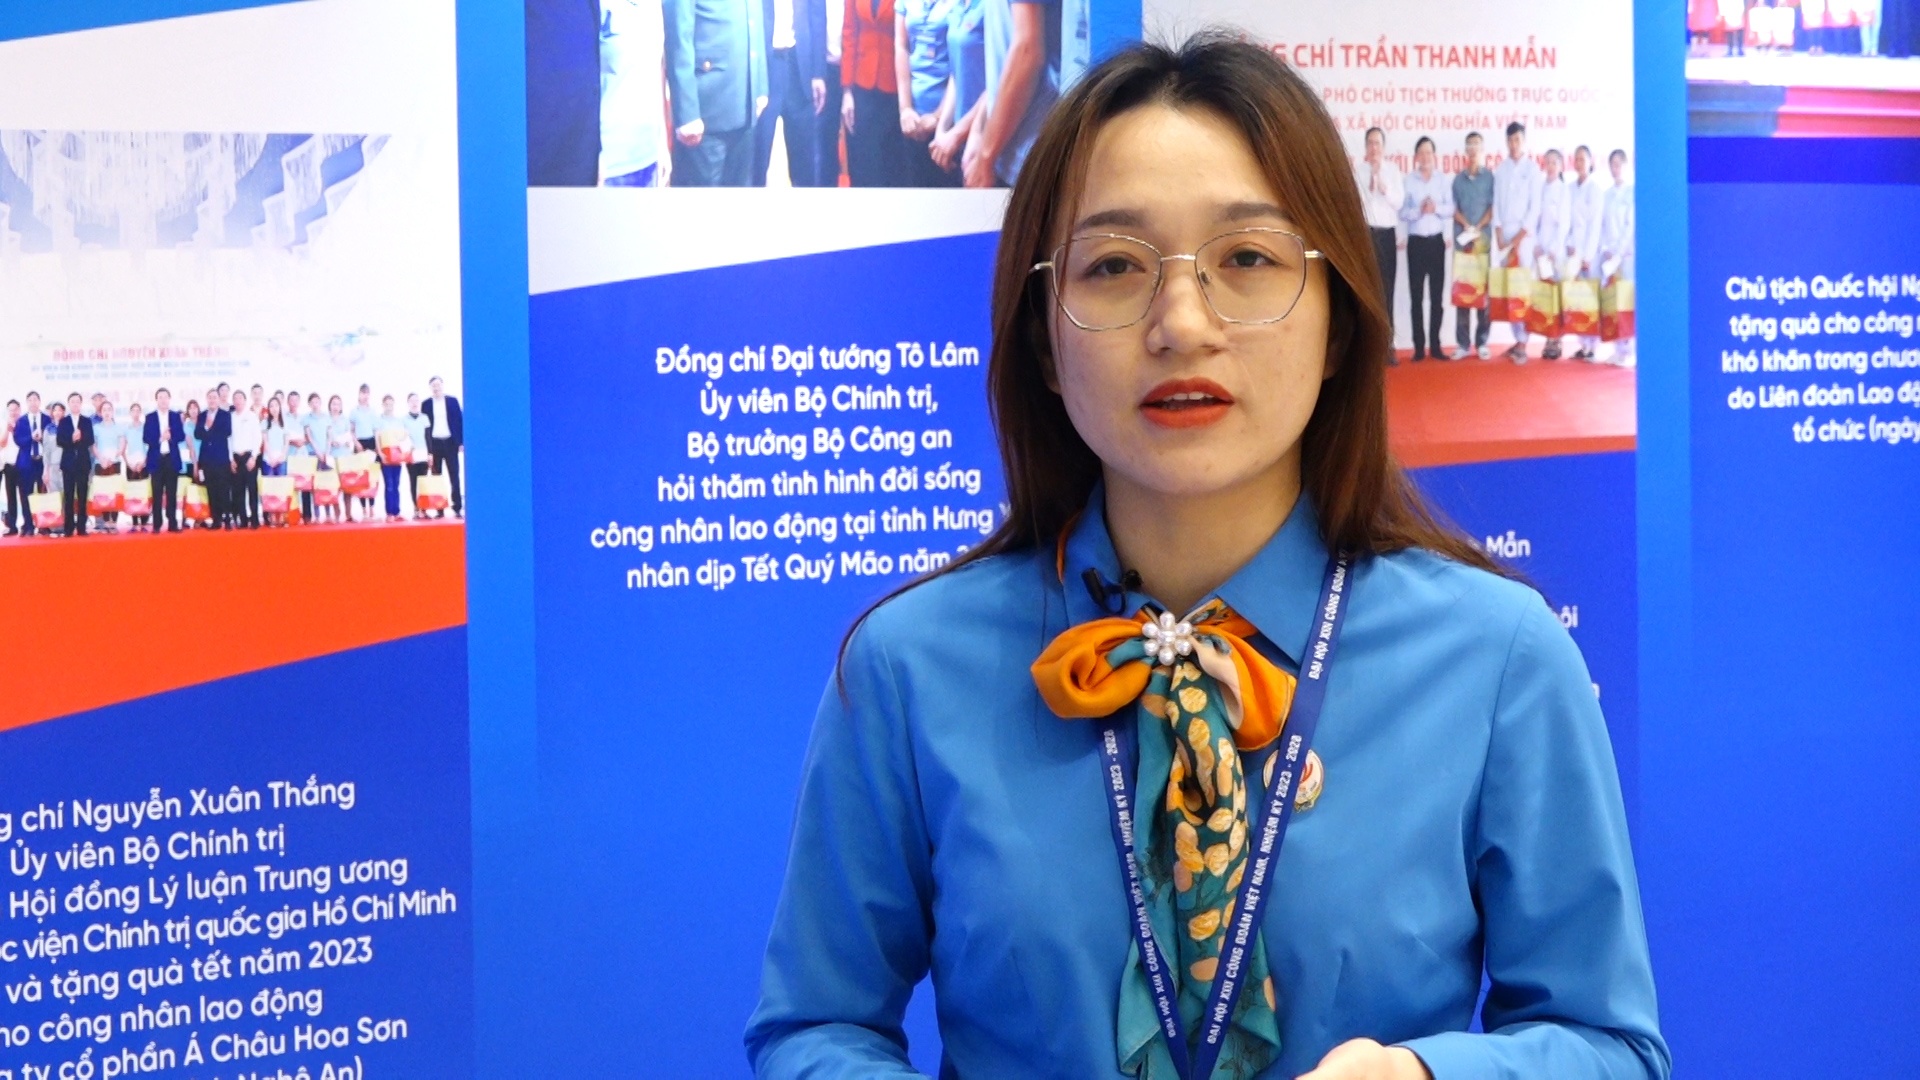 Đại biểu LĐLĐ tỉnh Kon Tun: Cần những hoạt động "sát" với NLĐ trong doanh nghiệp khu vực ngoài nhà nước